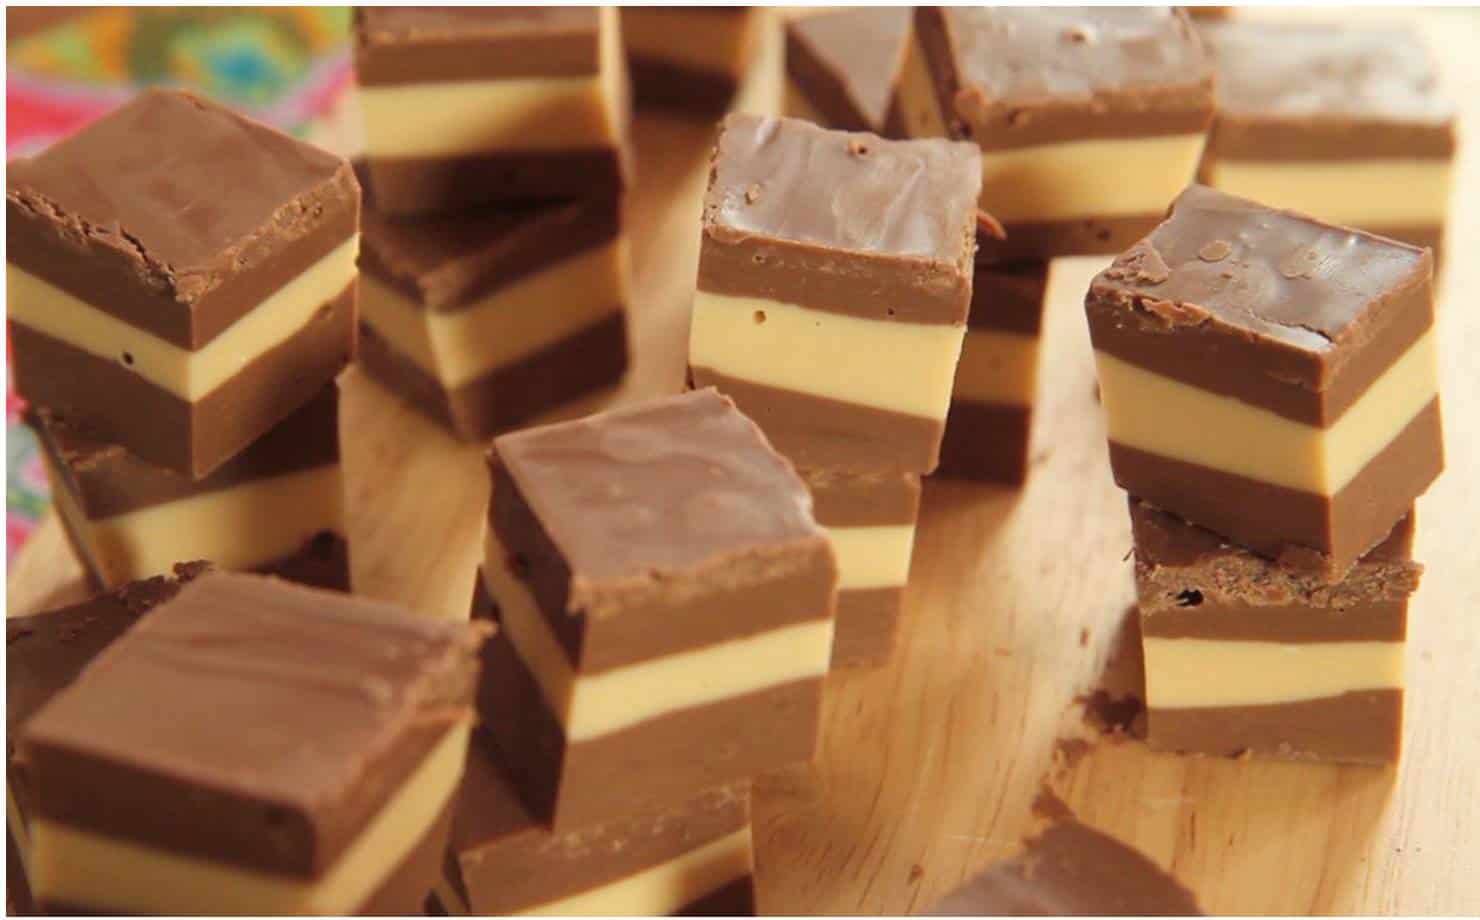 Chocolates marroquinos: uma sobremesa irresistível com 3 ingredientes